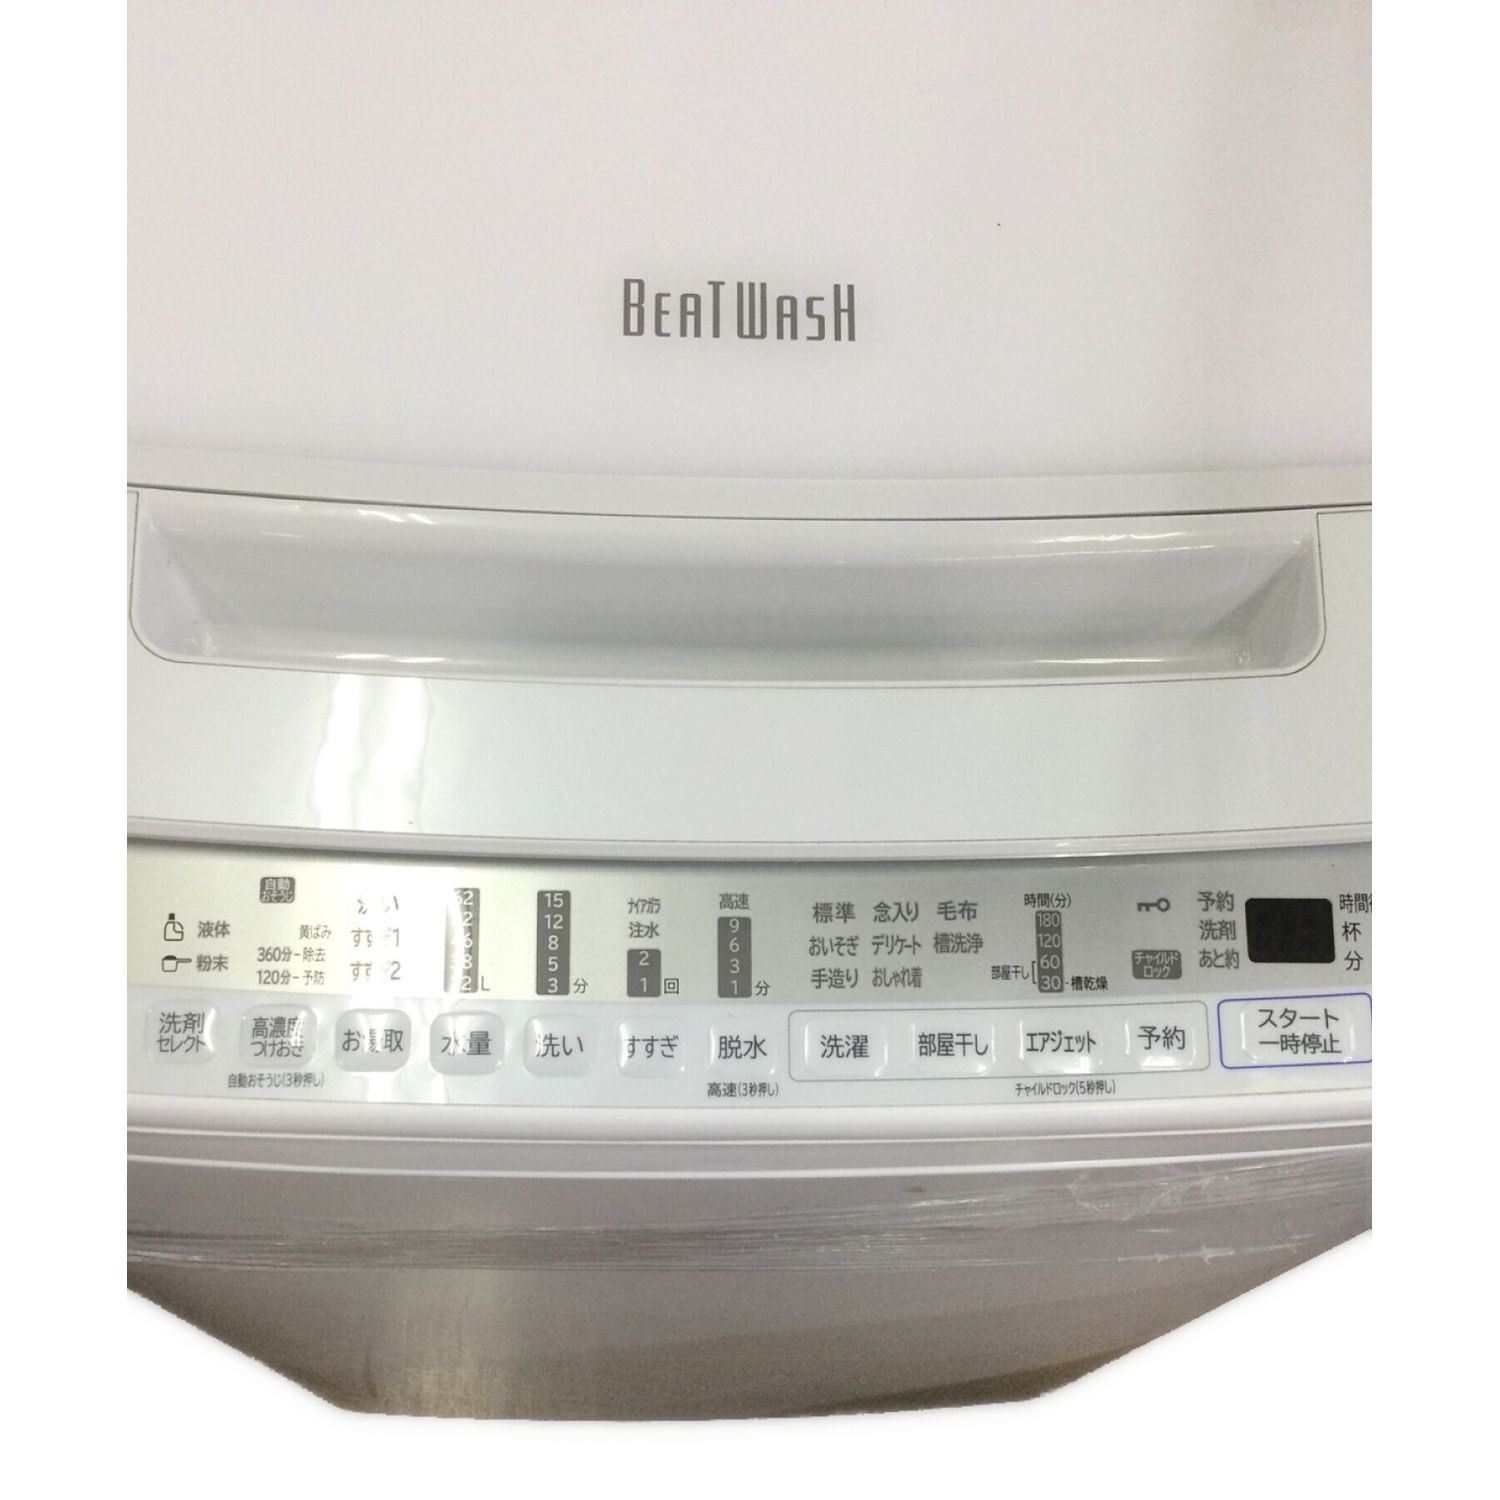 HITACHI (日立/ヒタチ) 全自動洗濯機 ビートウォッシュ BW-V80F 8kg